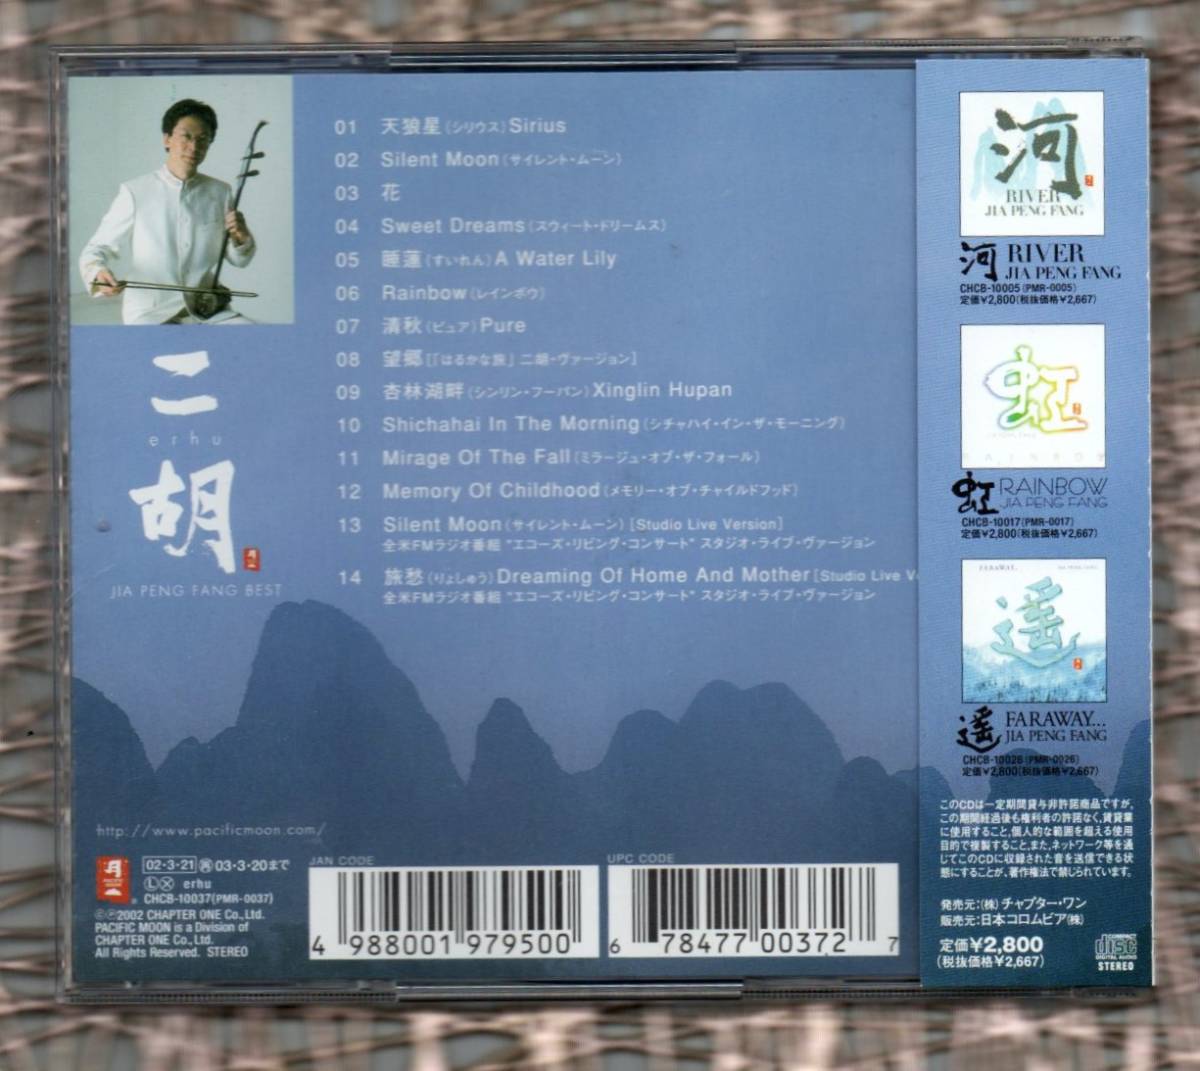 Ω ジャー パンファン Jia Peng fang 賈鵬芳 14曲入 ベスト CD/二胡 erhu～JIA PENG FANG BEST_画像2